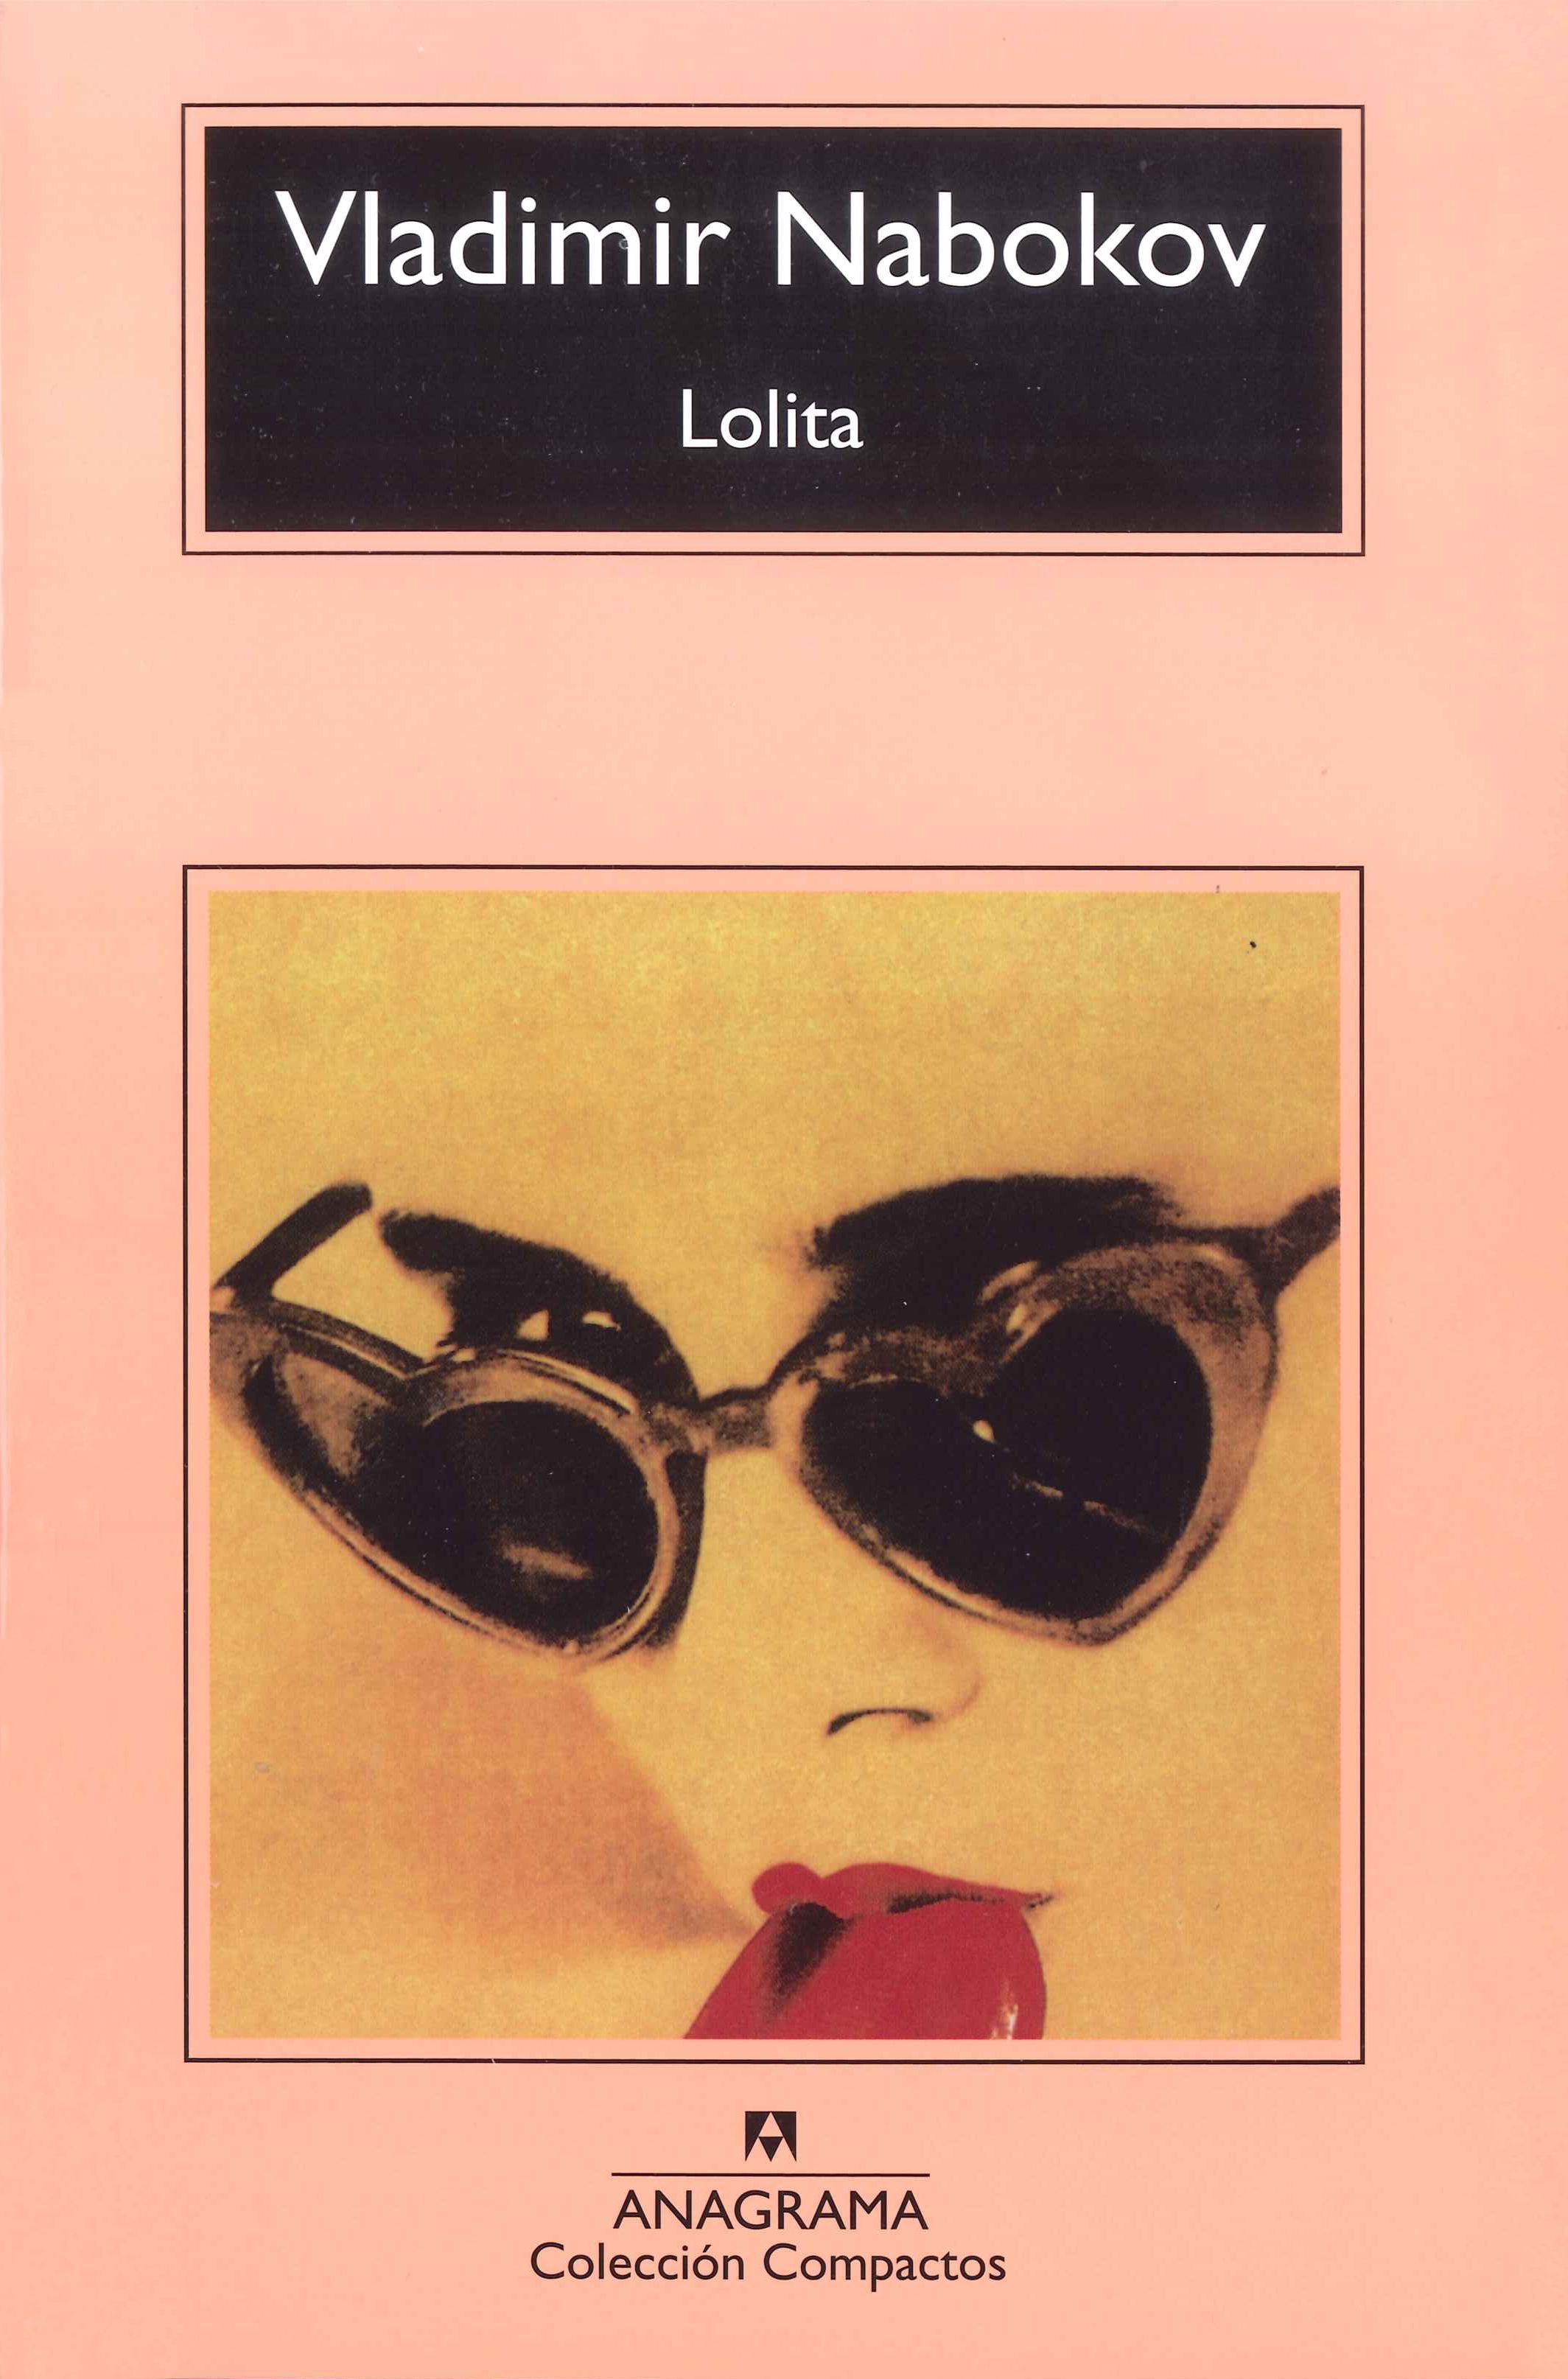 Meloso espiral Amperio Lolita — Vladimir Nabokov - Libros Prohibidos